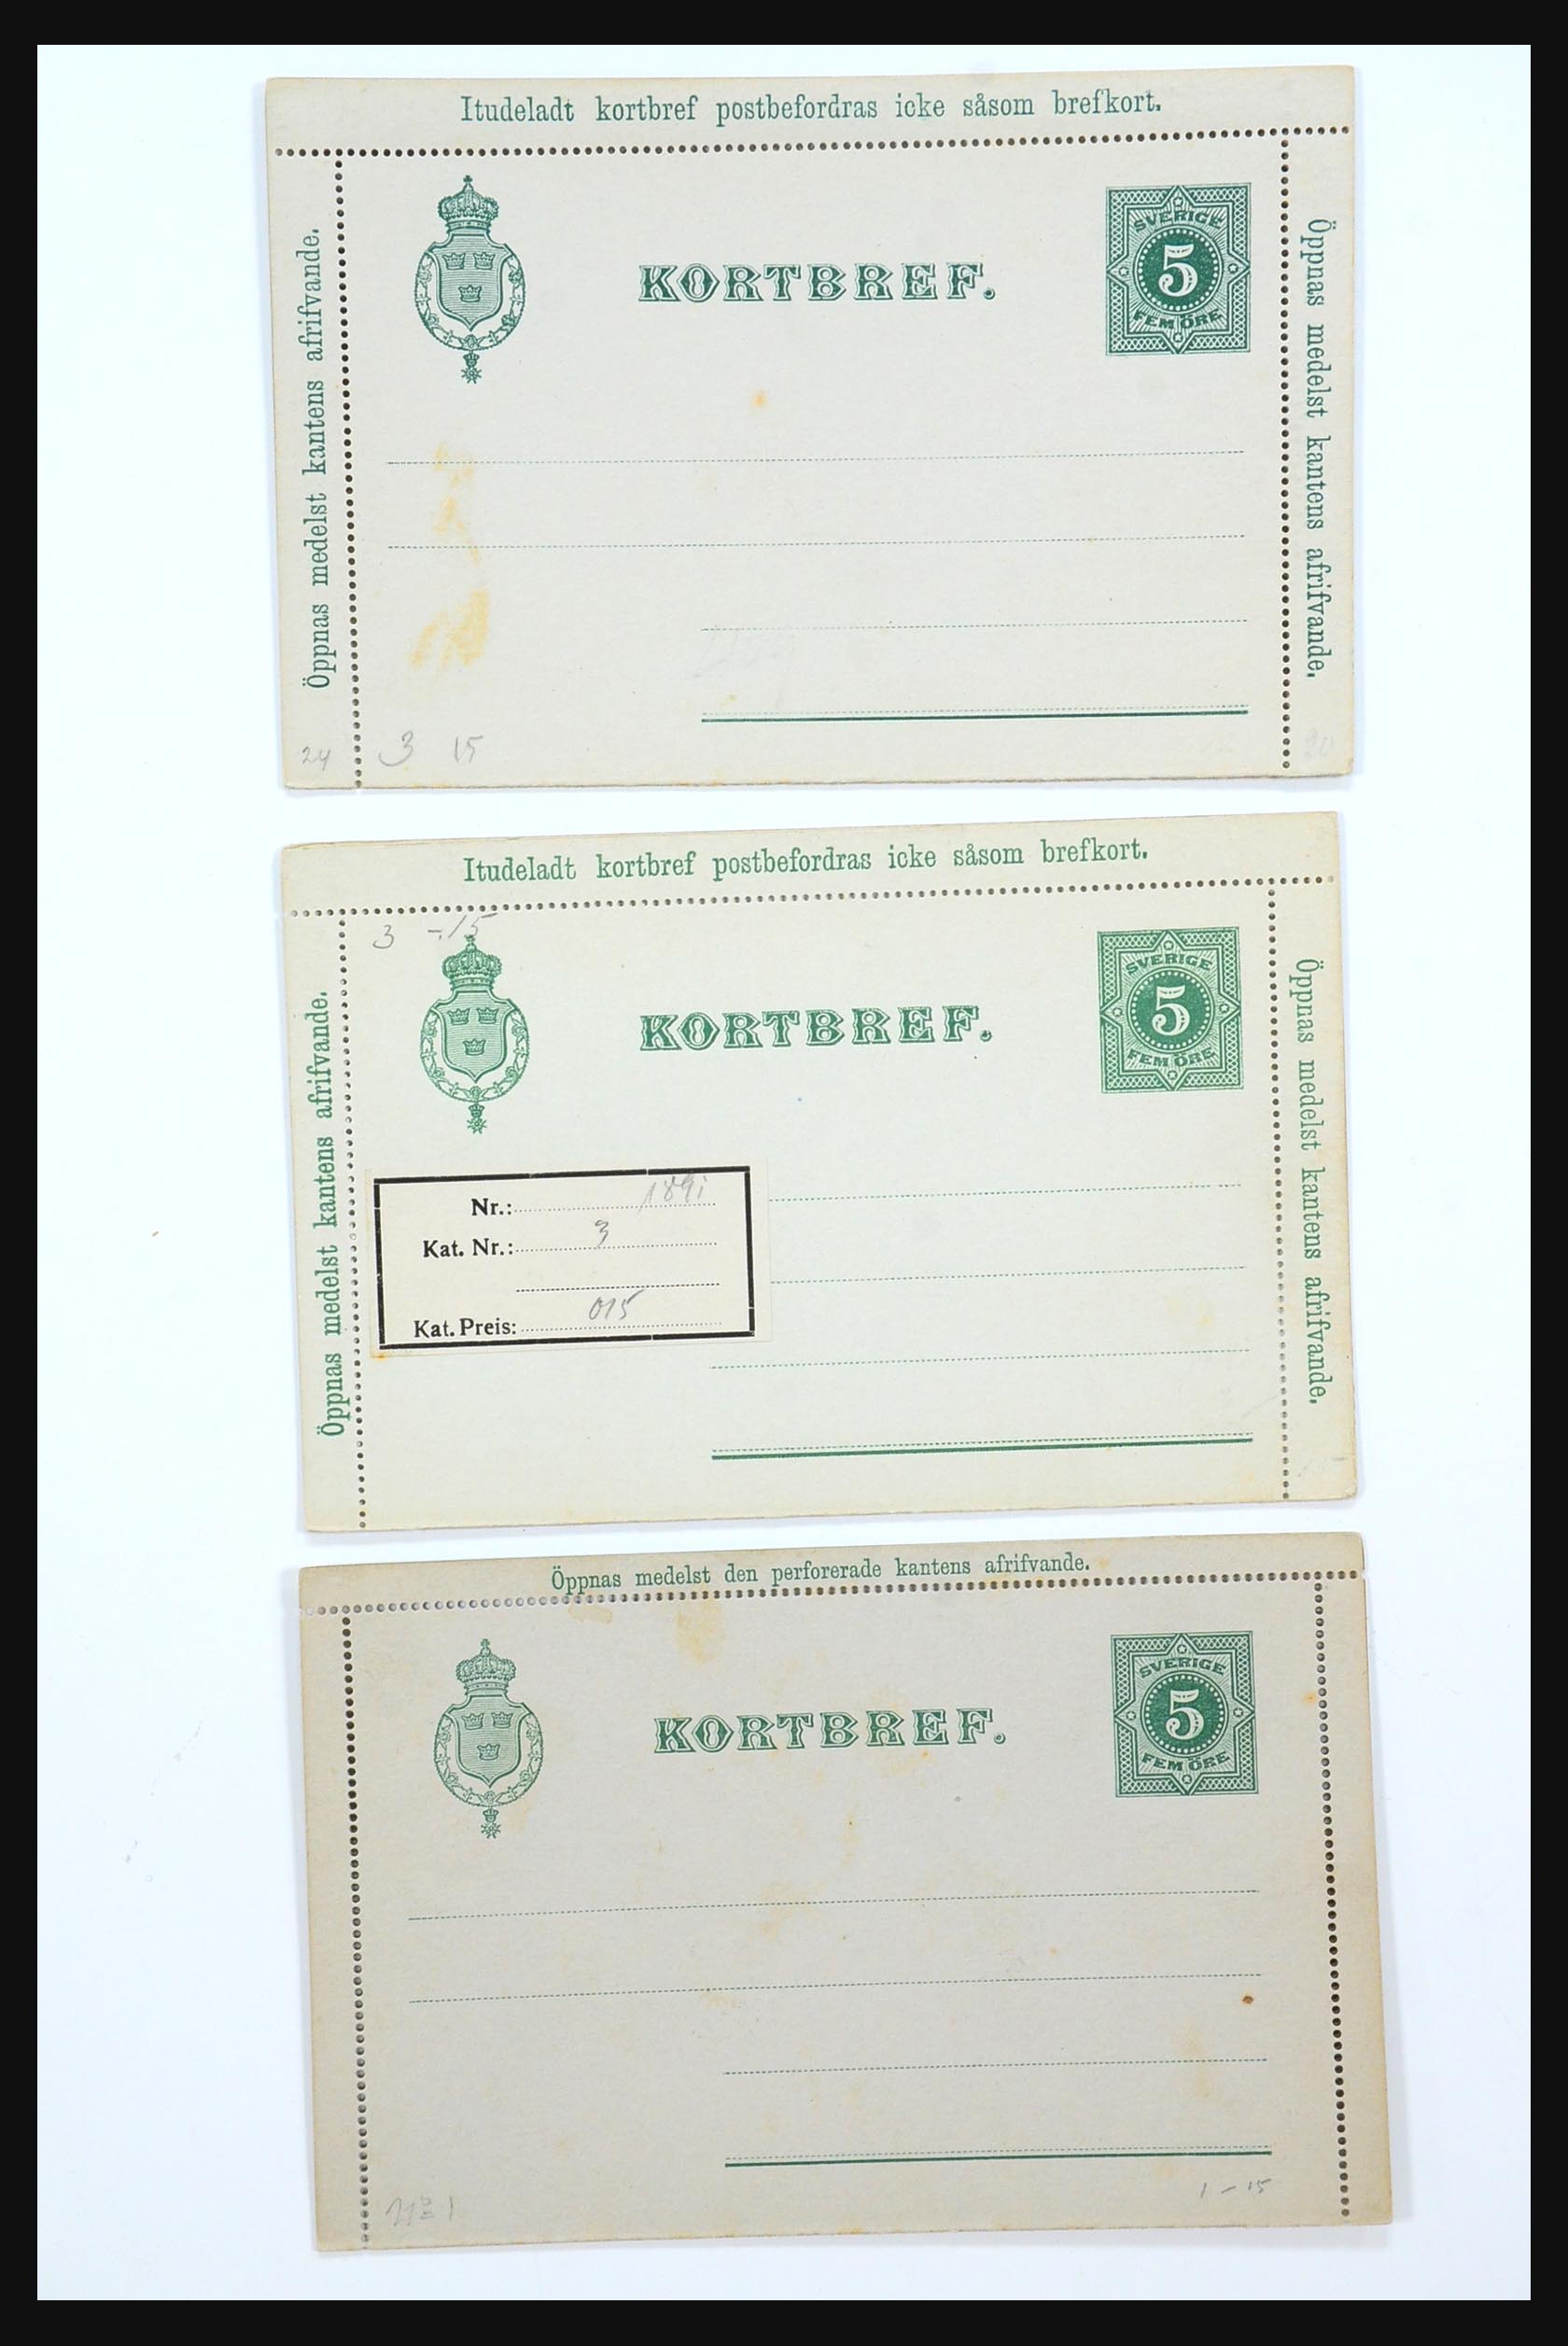 31364 029 - 31364 Zweden brieven 1864-1960.